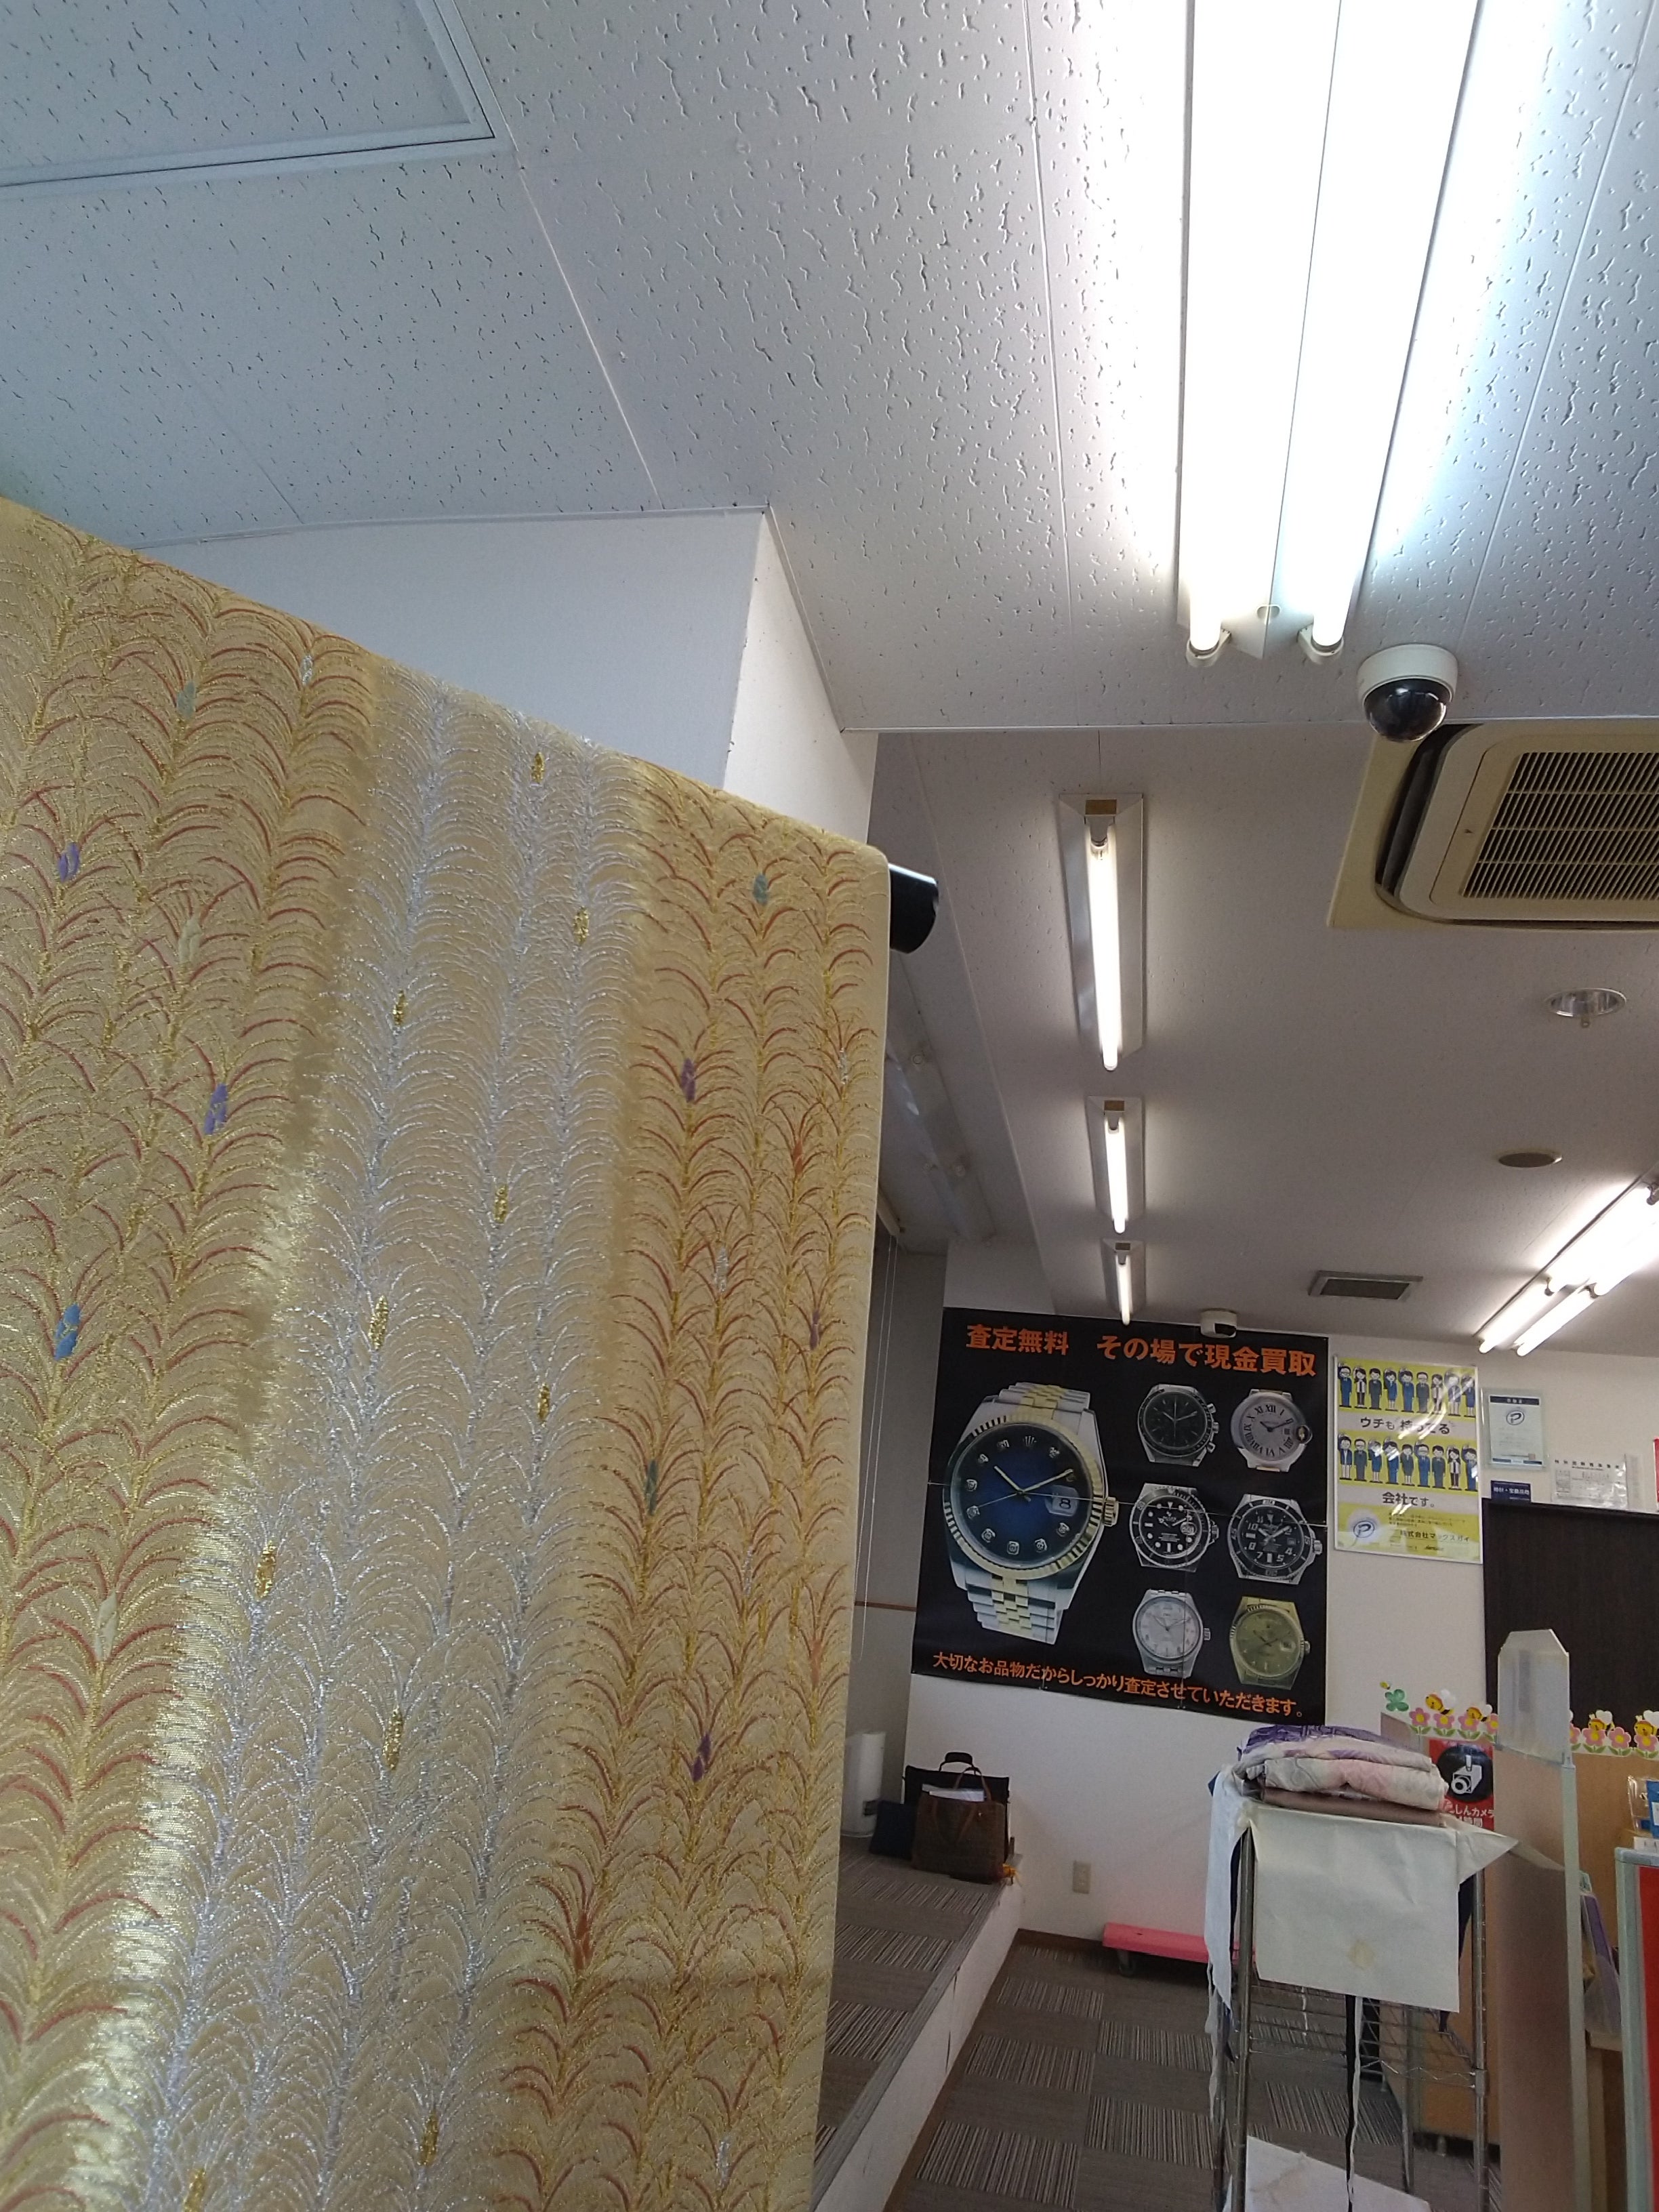 ザ・ゴールド 飯田上郷店の店内の様子の写真